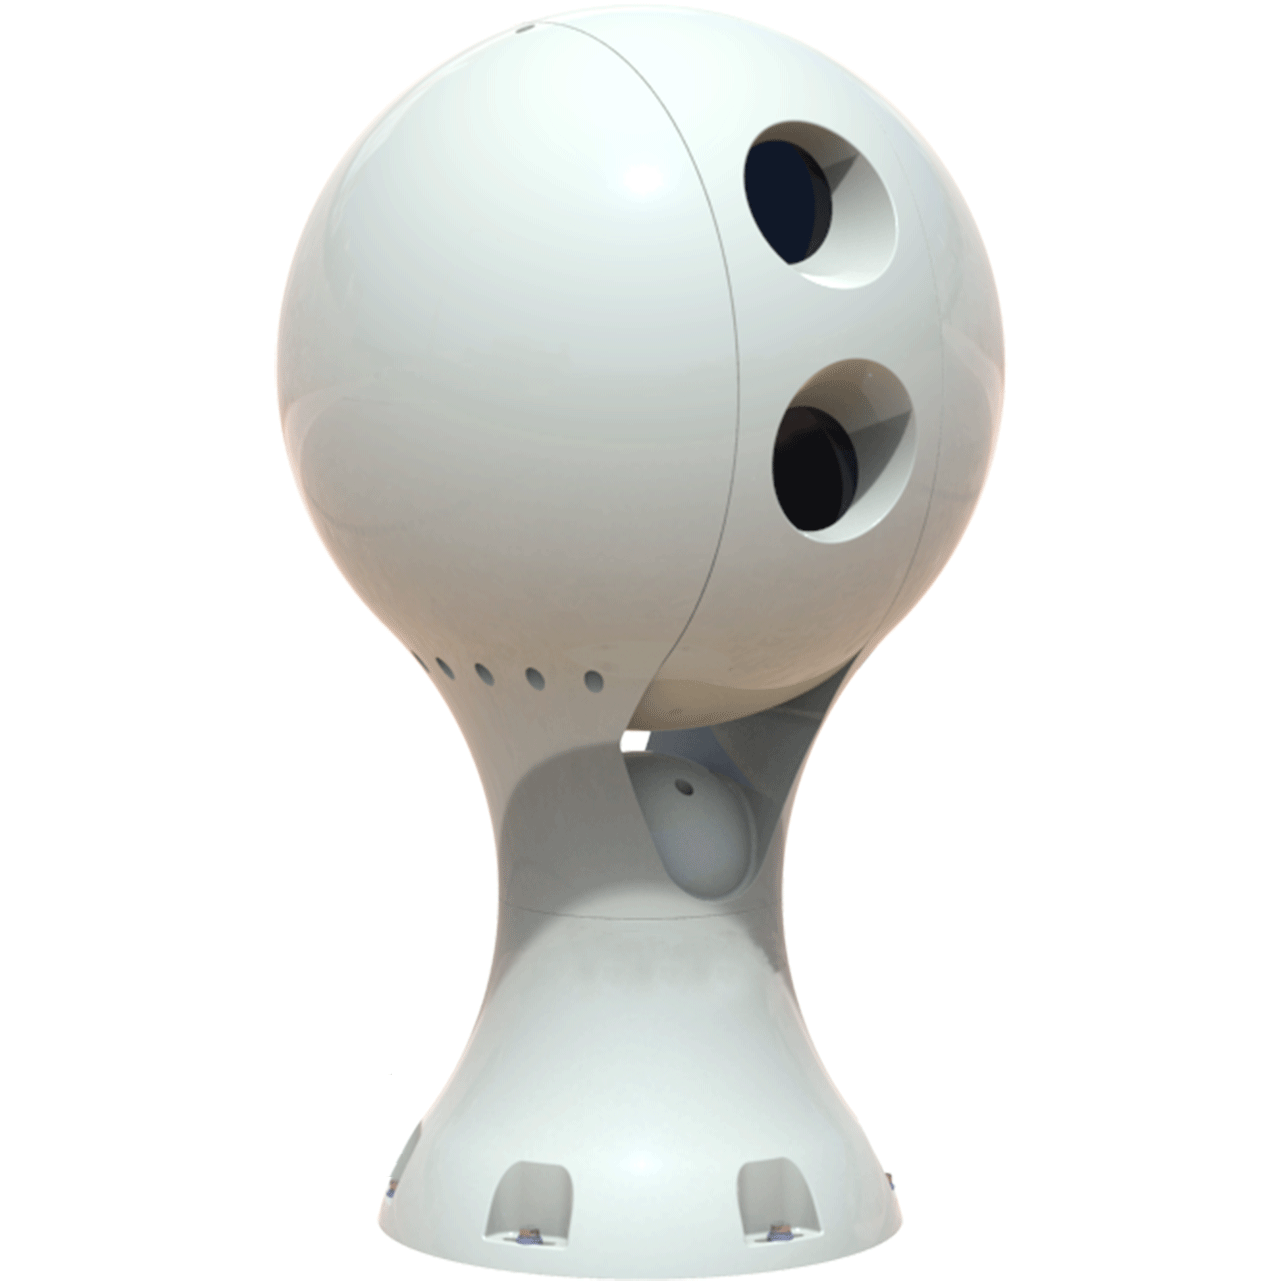 抗风球热成像转台双光谱监控摄像机,可内置348或640热成像仪机芯和267~1500mm焦距1080P~4K高清一体机-JSA-8TSOAX680TH系列